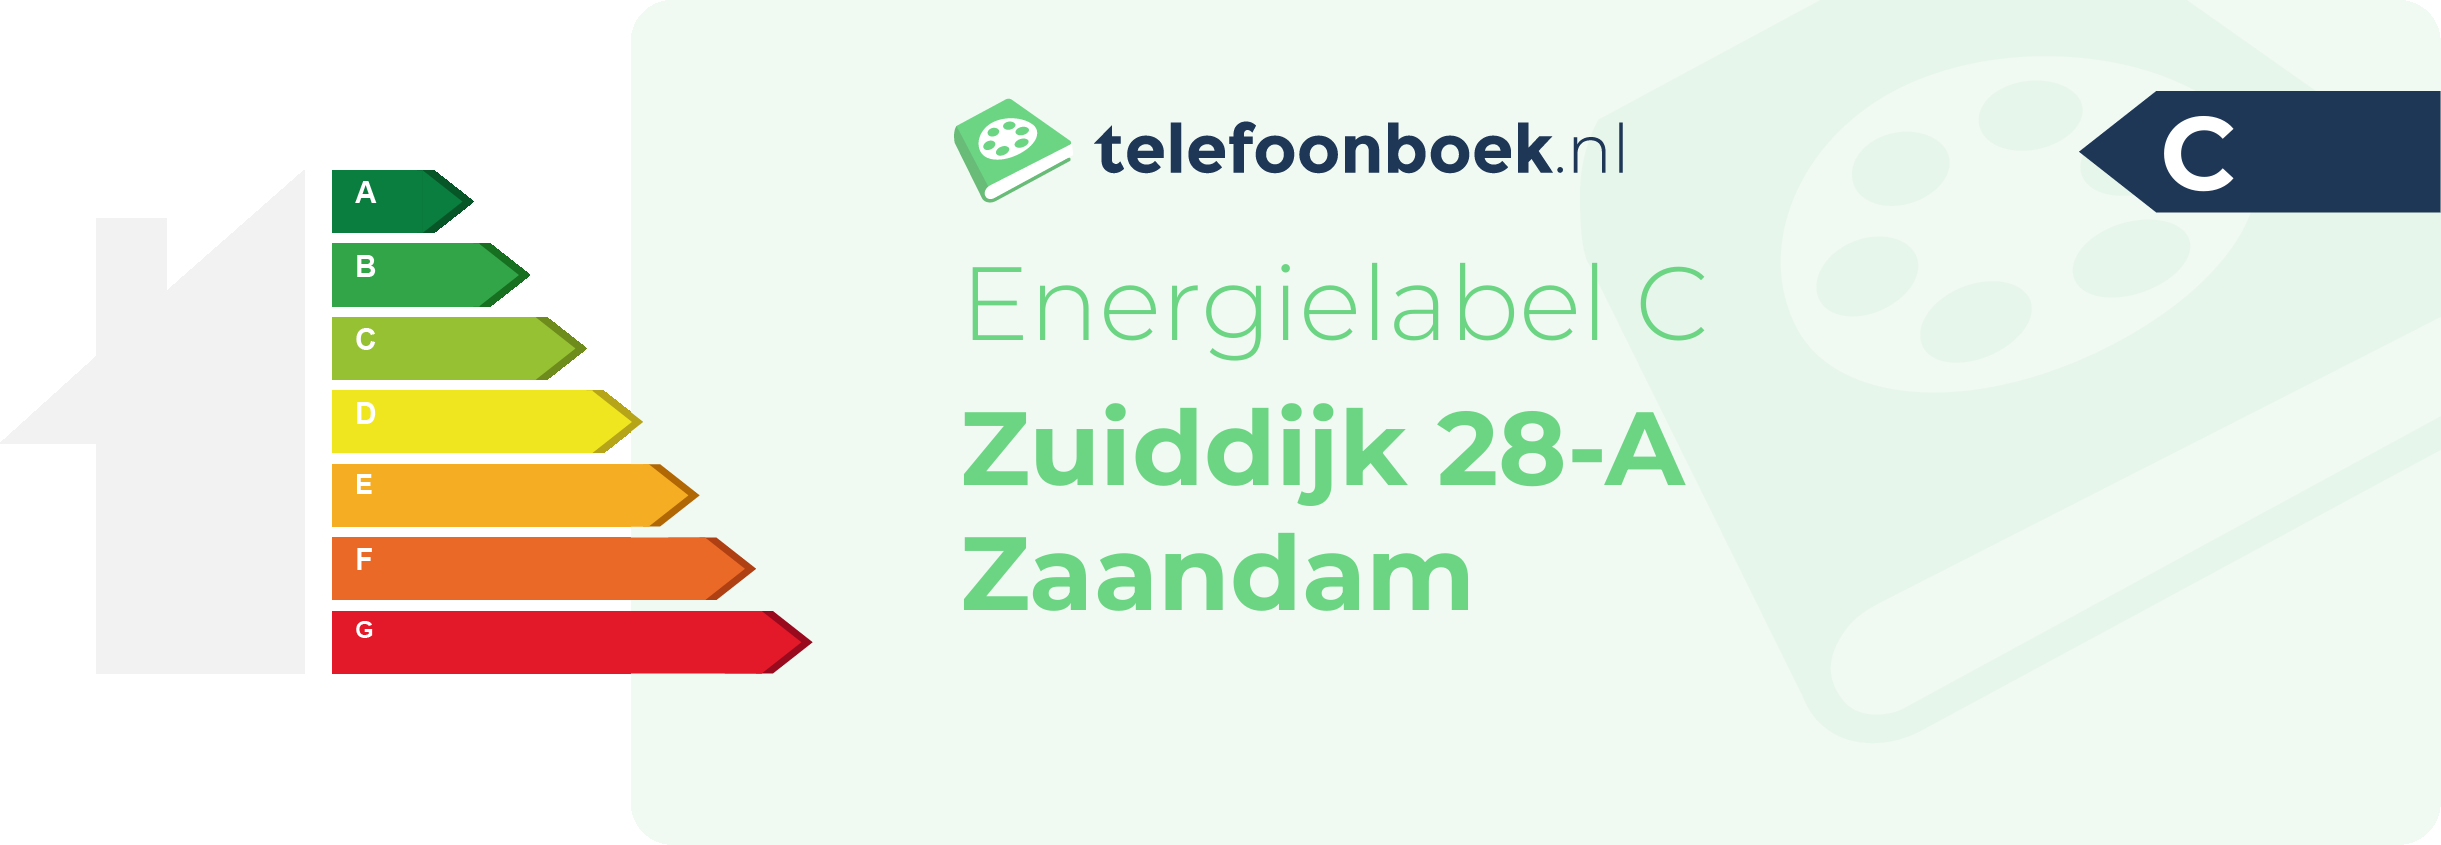 Energielabel Zuiddijk 28-A Zaandam